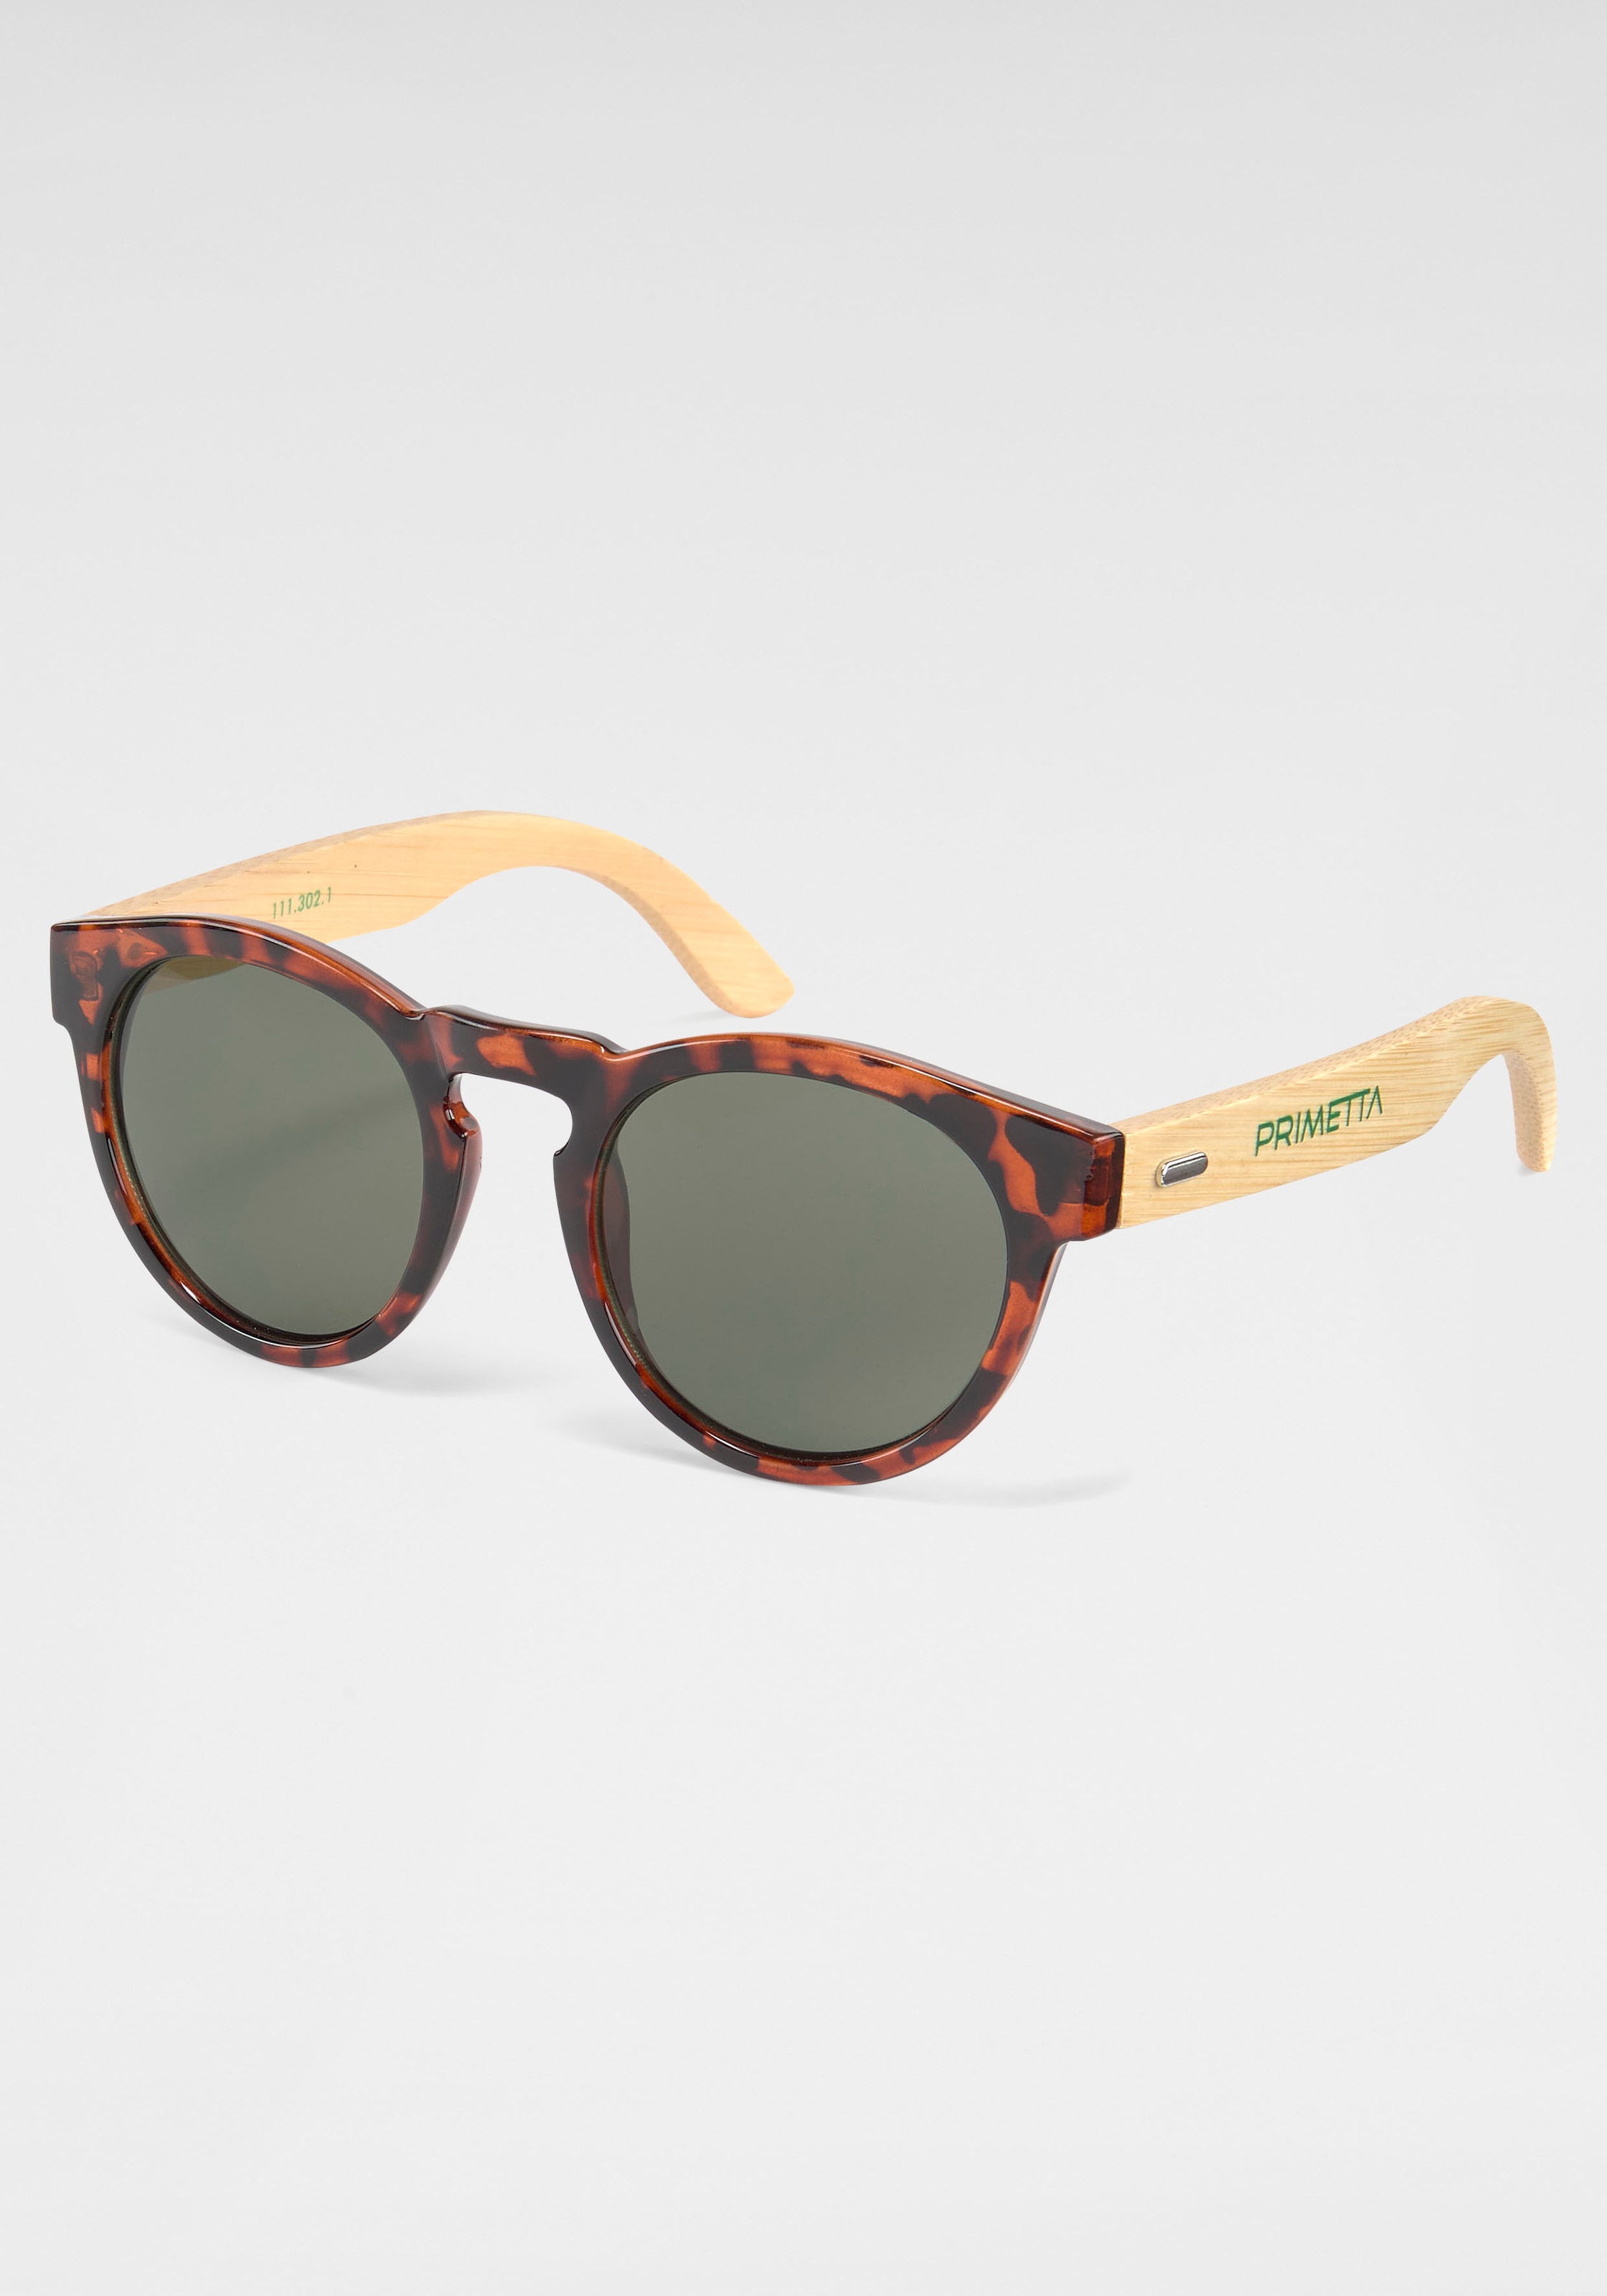 PRIMETTA Eyewear Sonnenbrille kaufen | BAUR